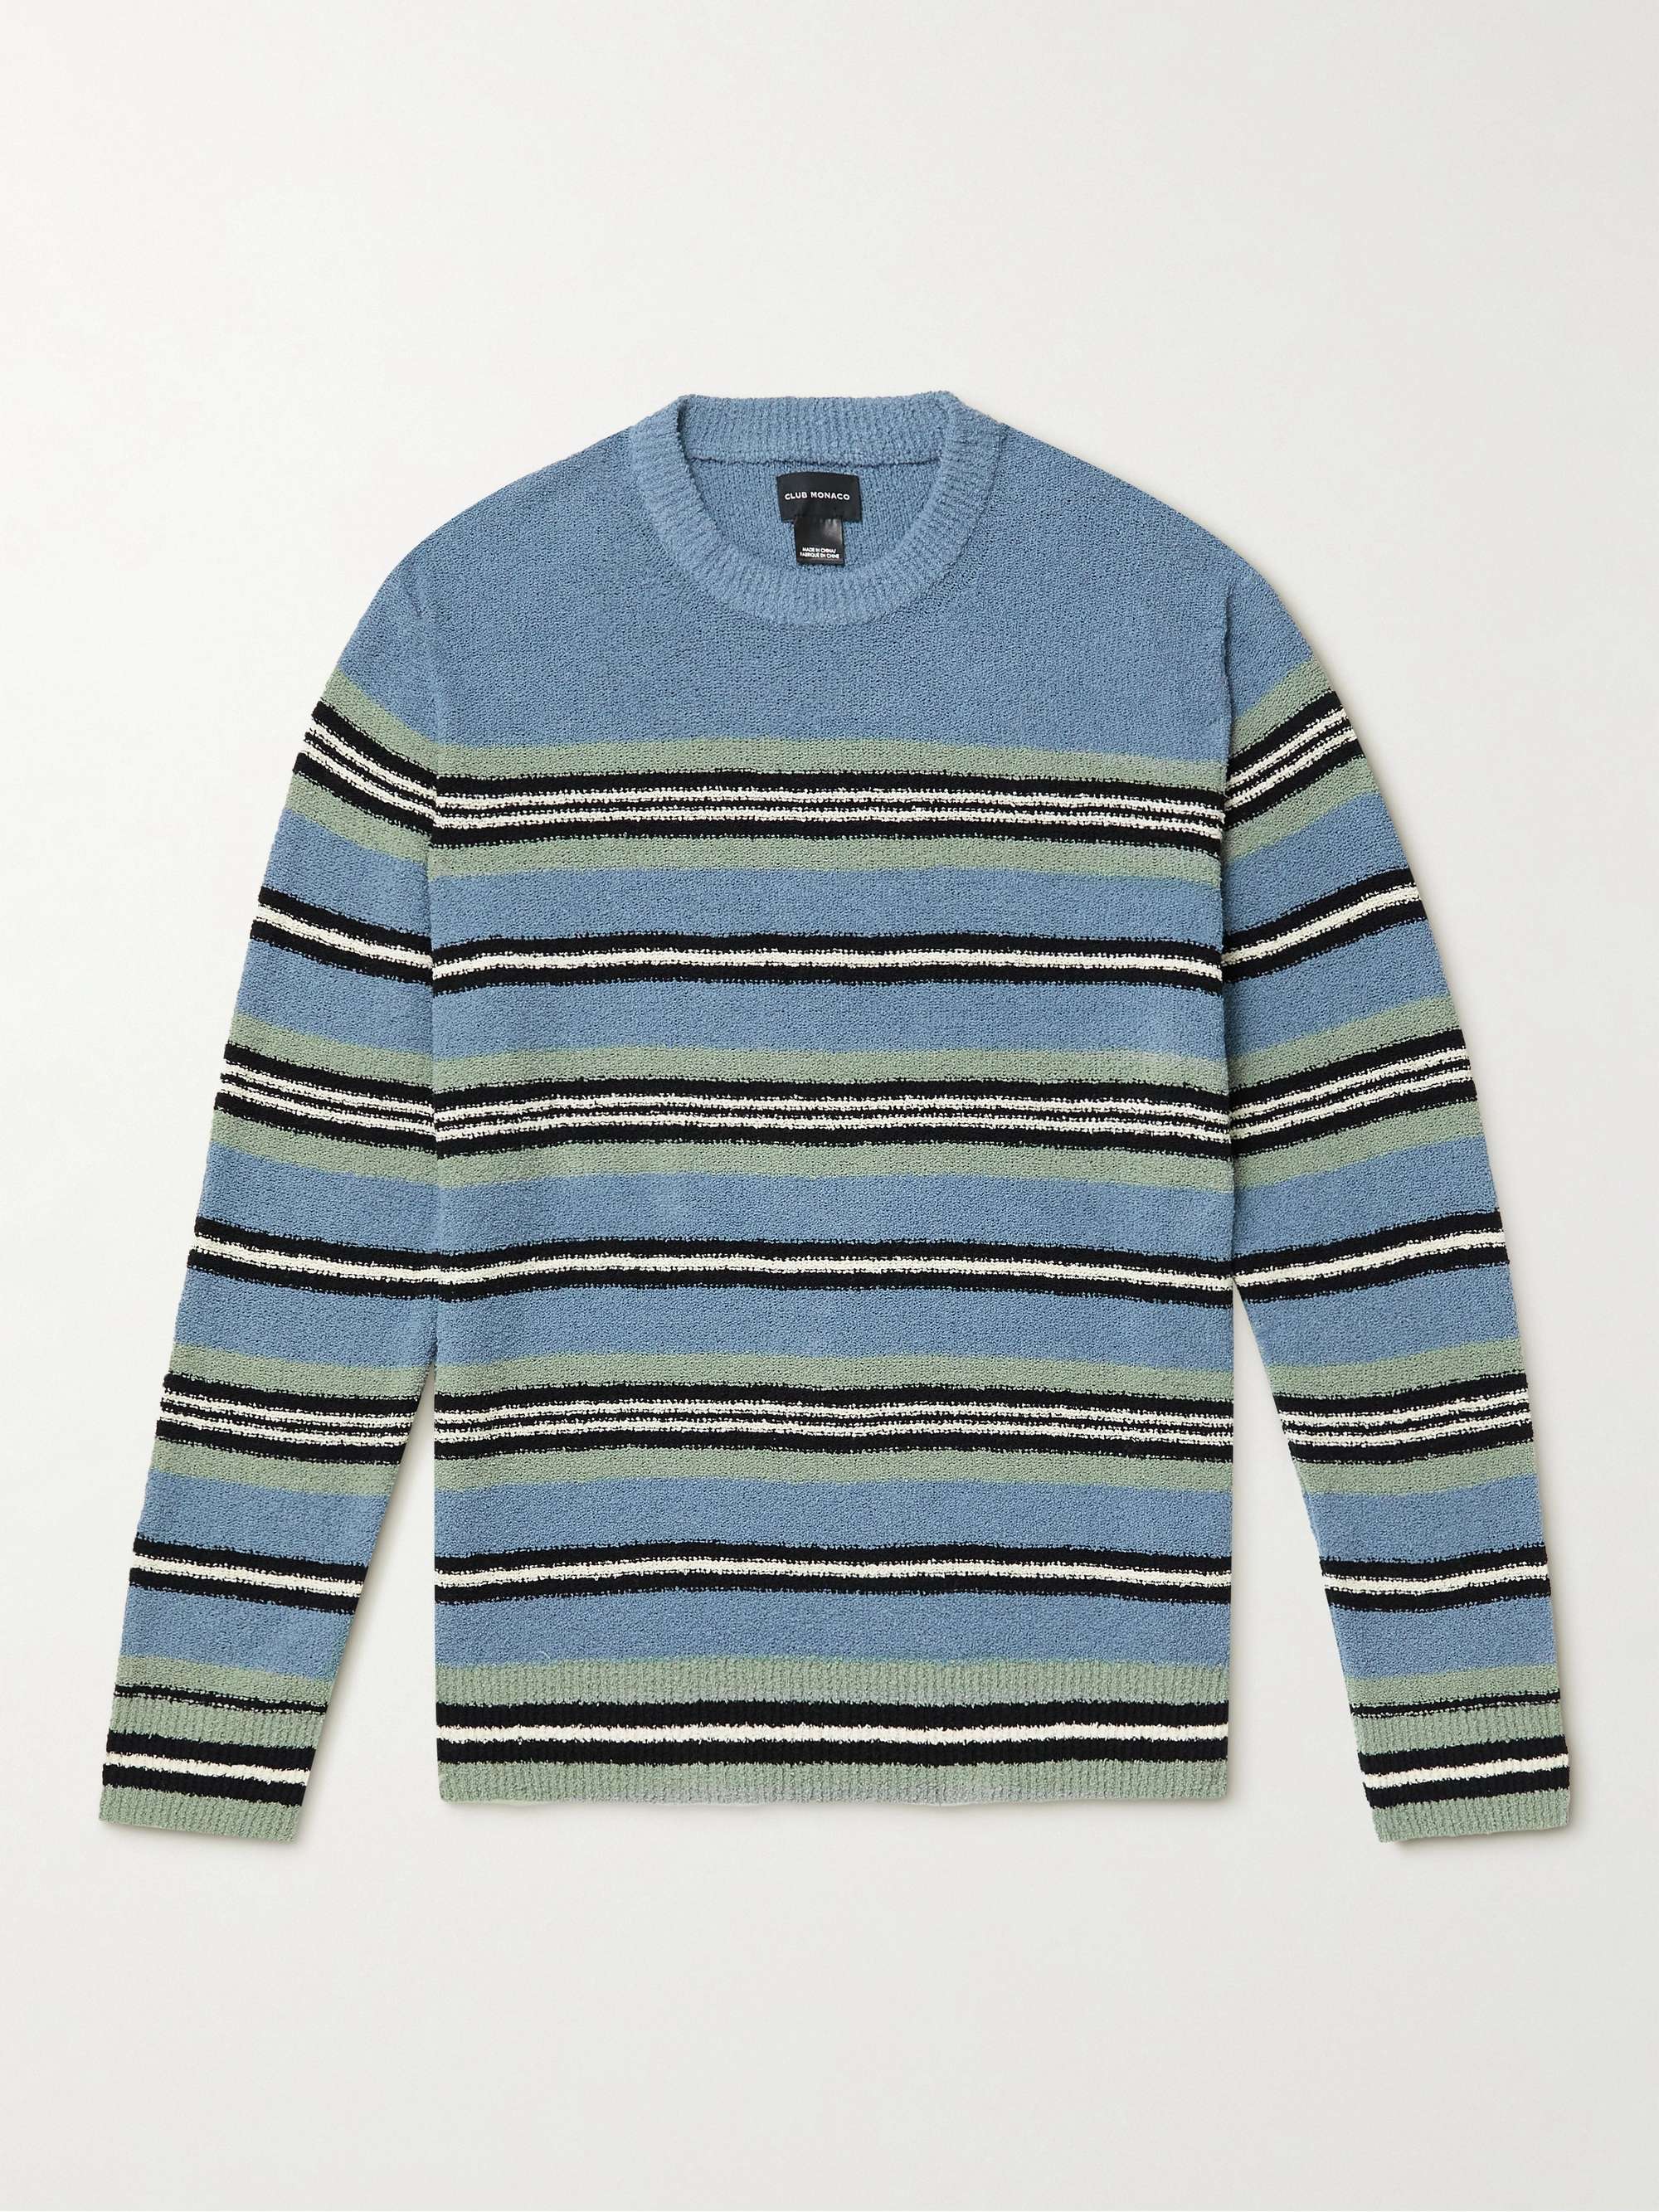 CLUB MONACO Striped Cotton-Blend Bouclé Sweater